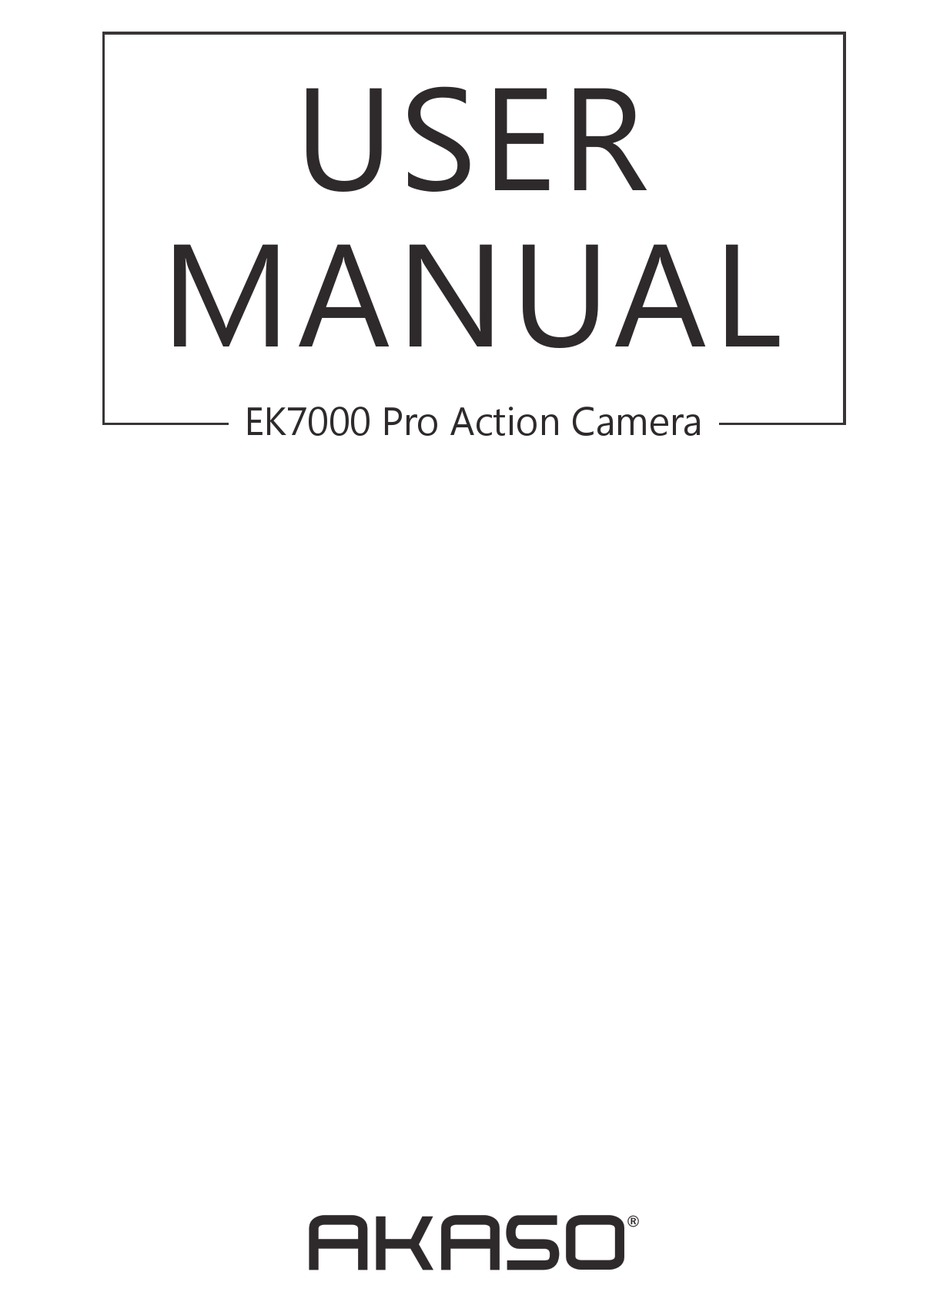 AKASO EK7000 USER MANUAL Pdf Download | ManualsLib